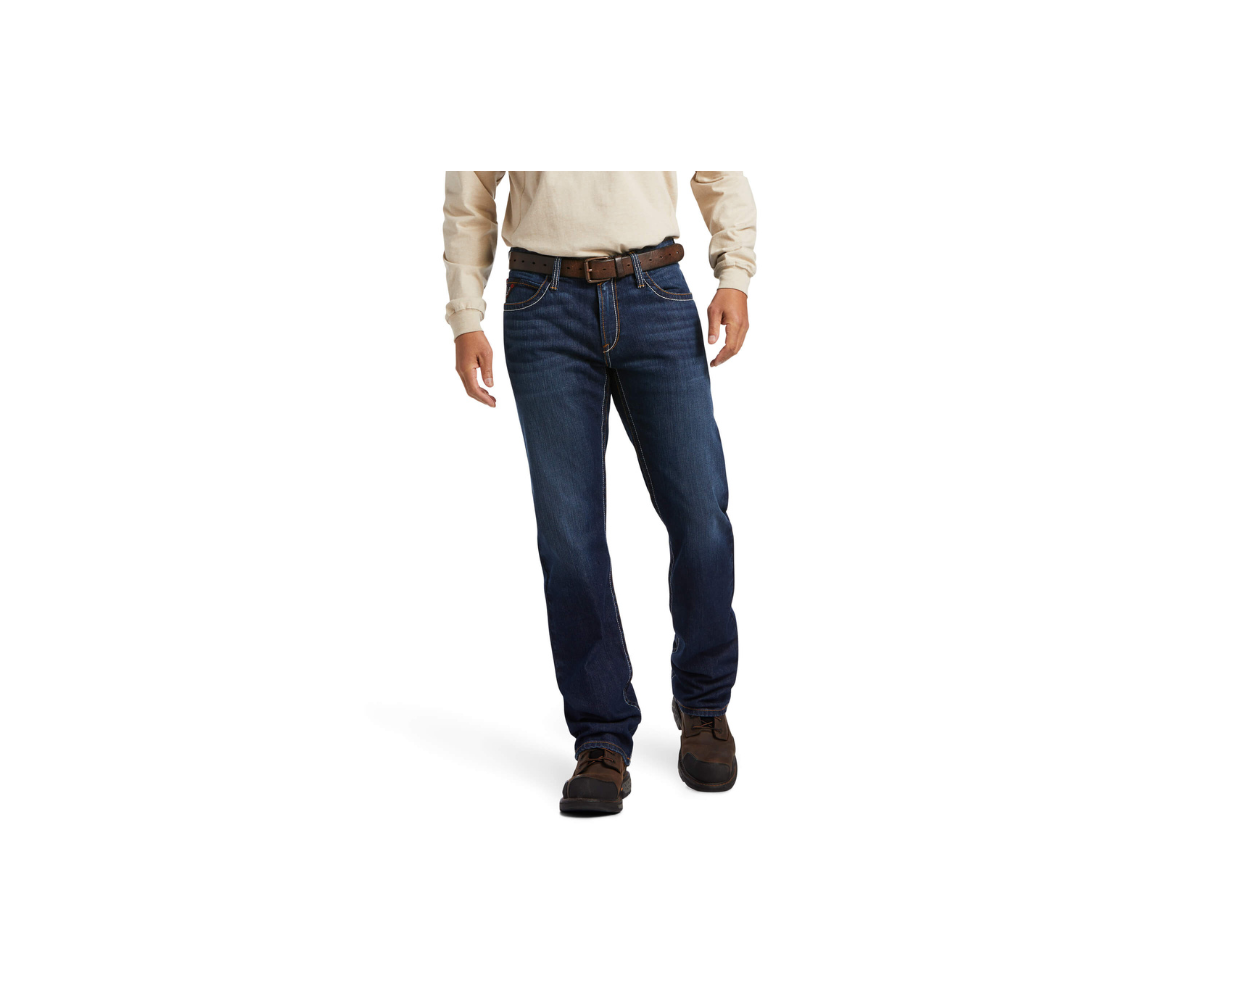 Men's Bootcut Jeans & Trousers, Mode De Base